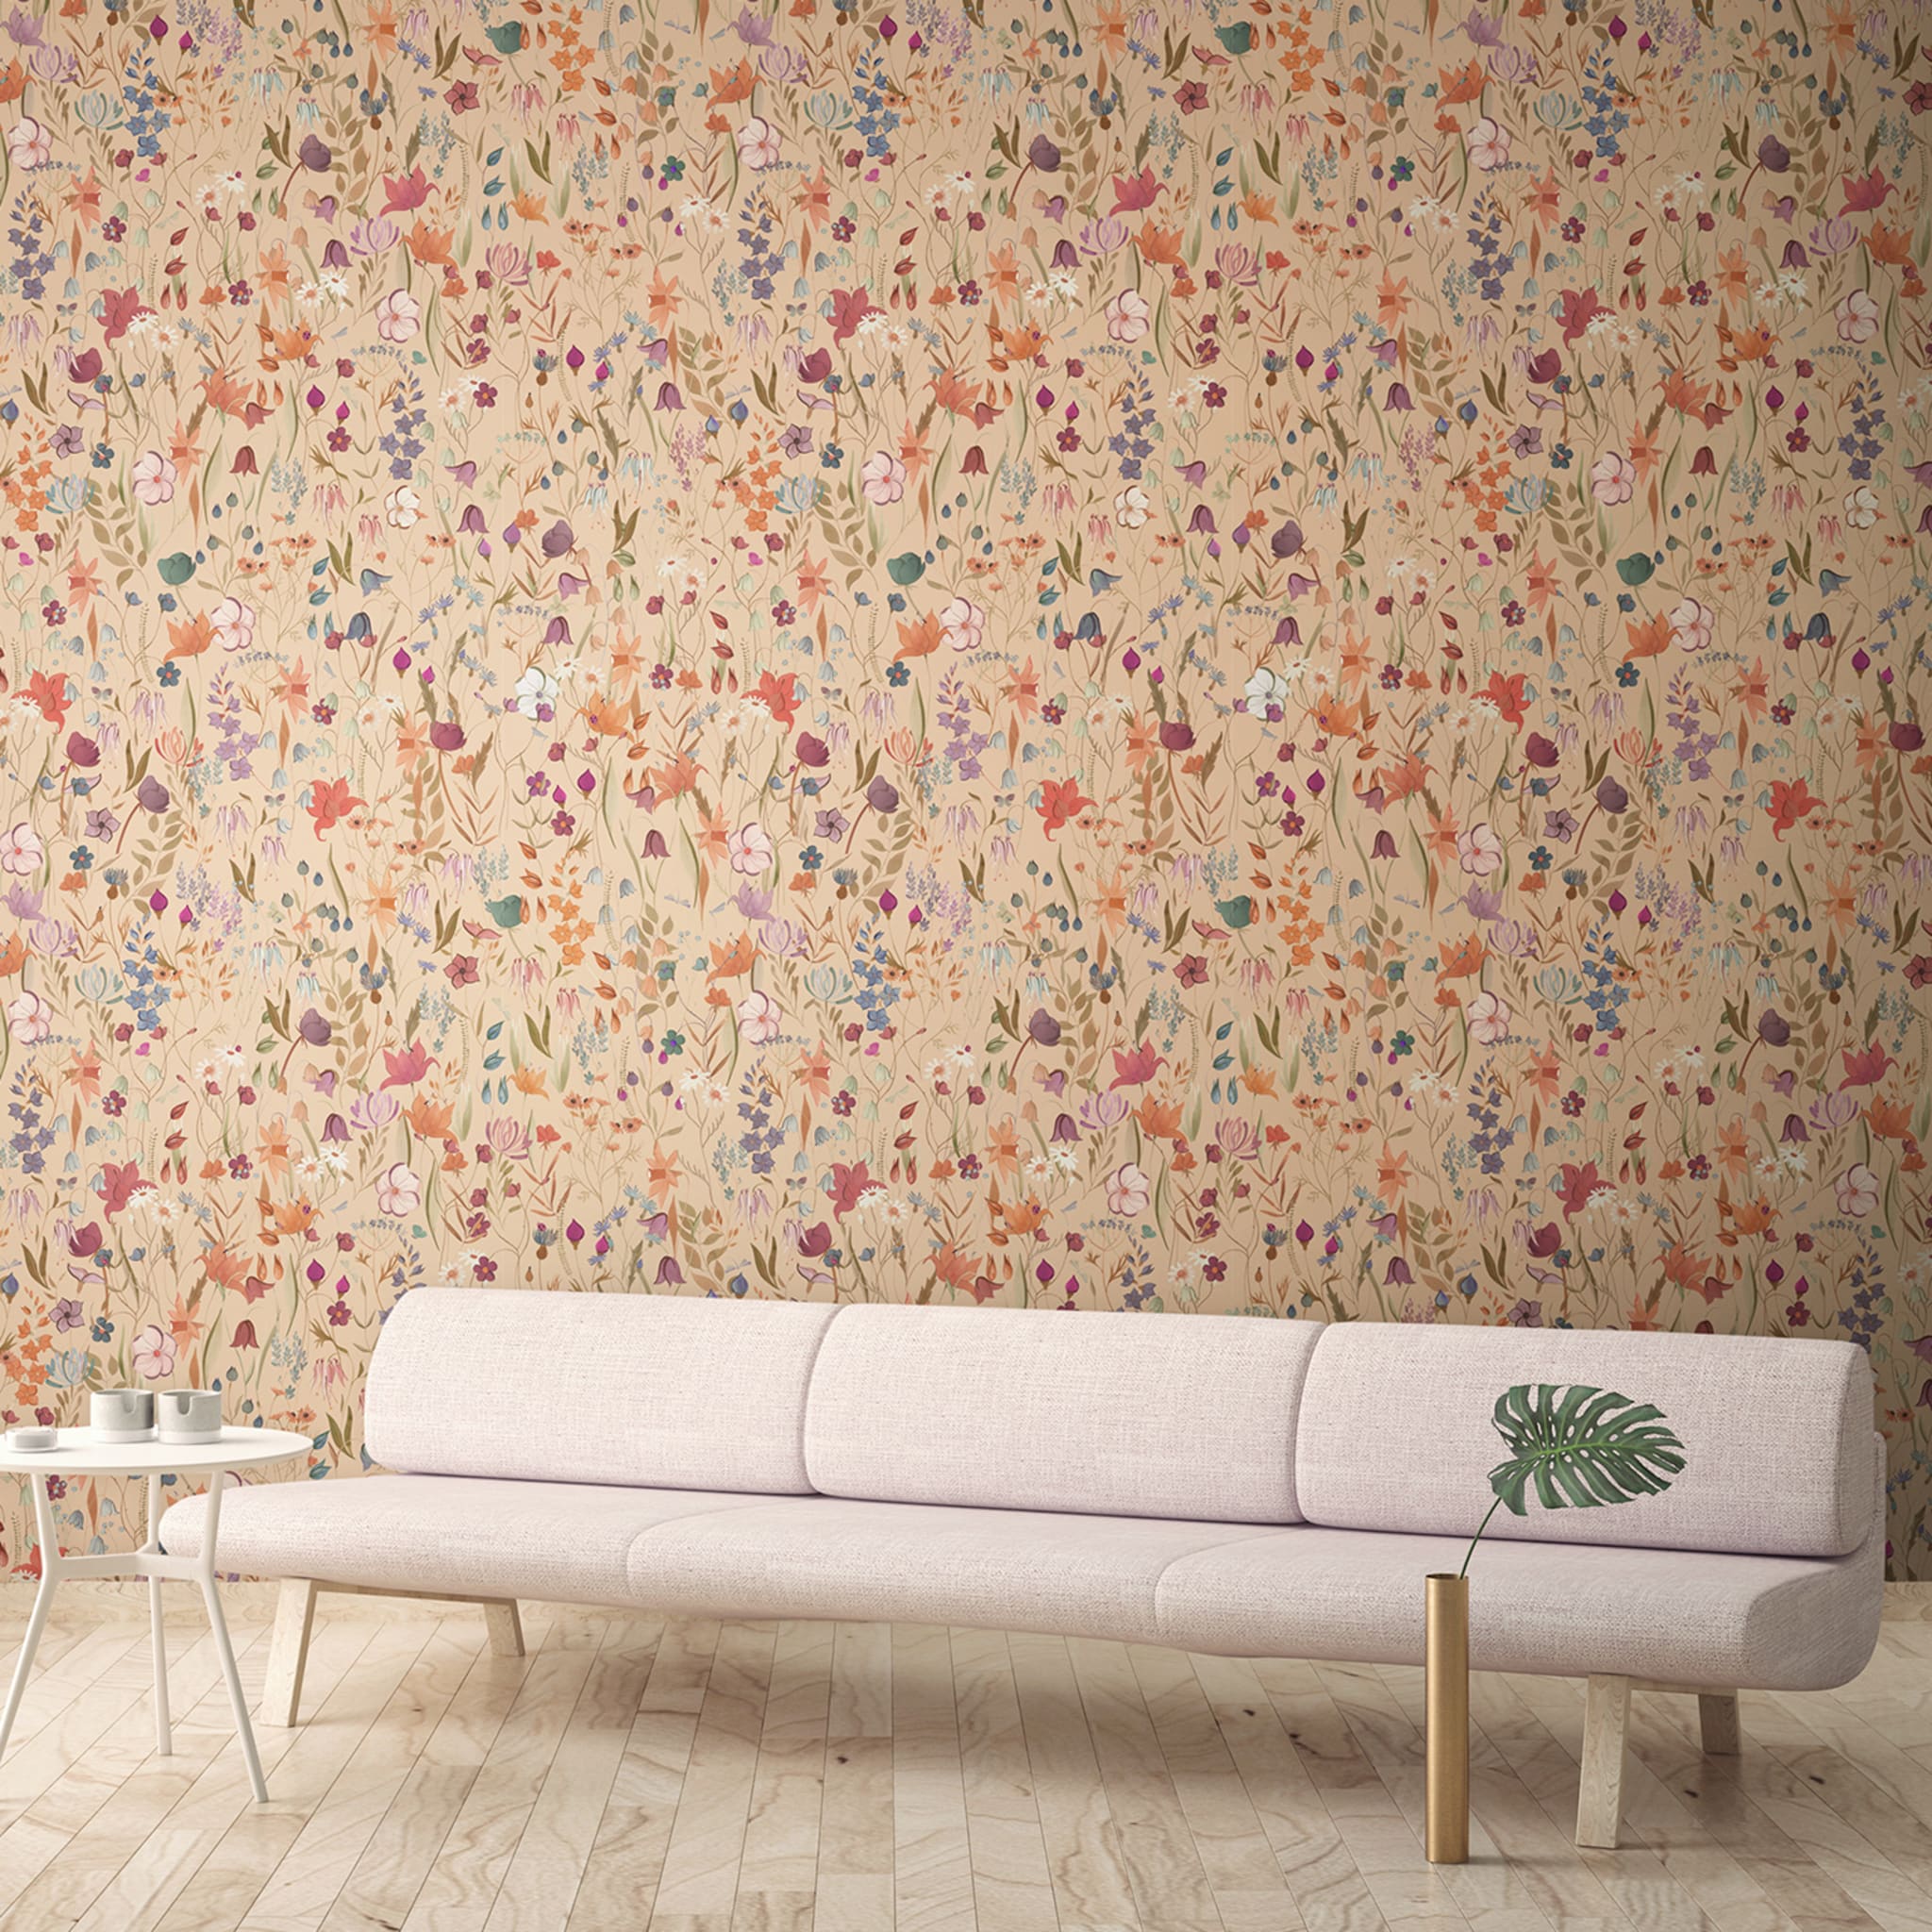 Flora Peach Campo Fiorito Polychrome Wallpaper - Alternative view 1